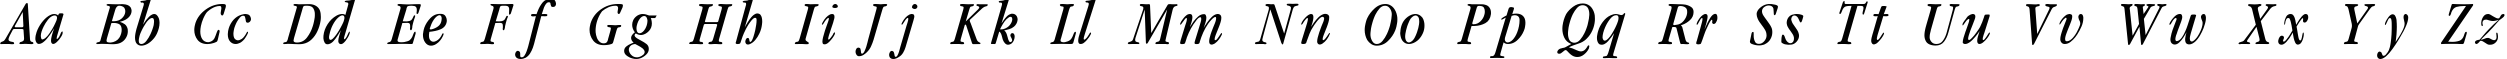 Пример написания английского алфавита шрифтом Garamondcond-Light-Italic